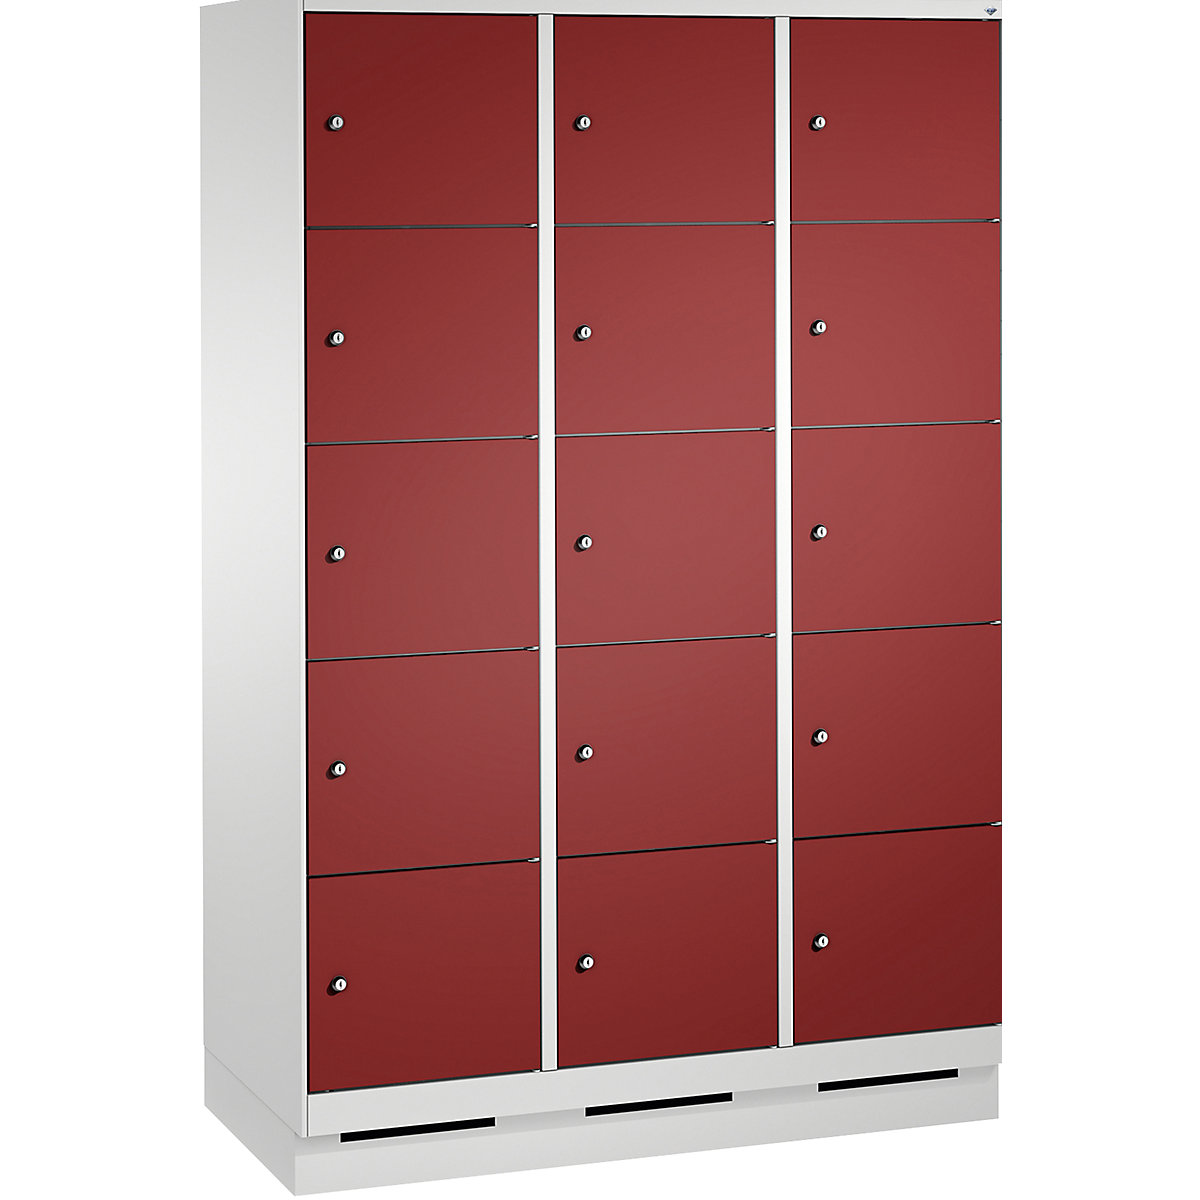 Armoire à casiers sur socle EVOLO – C+P, 3 compartiments, 5 casiers chacun, largeur compartiments 400 mm, gris clair / rouge rubis-12